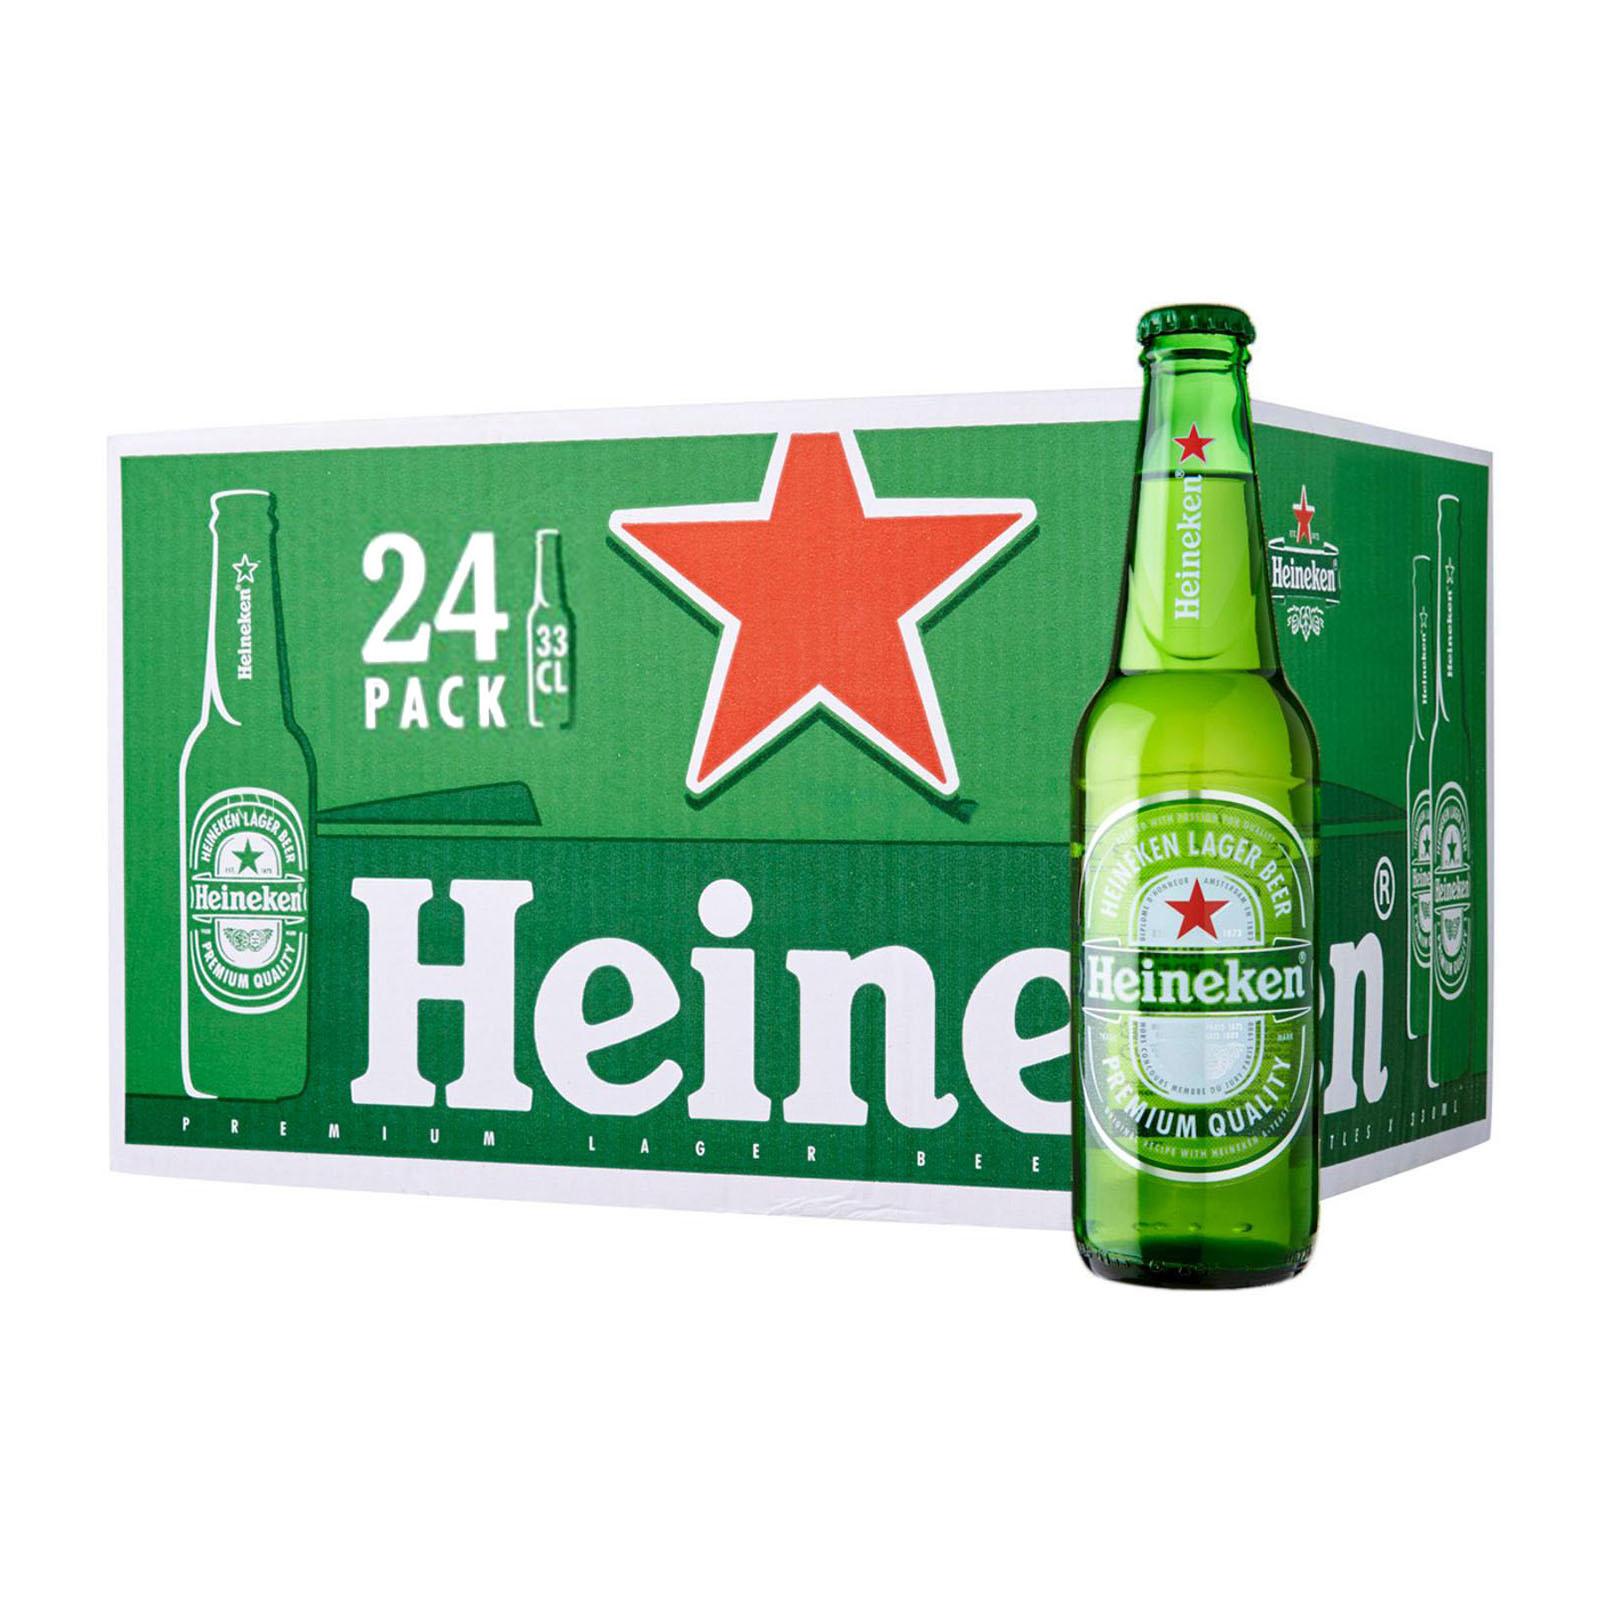 U8339defa8d0e418c959dd75a1a17764bs - Heineken Premium Lager Beer Bottles